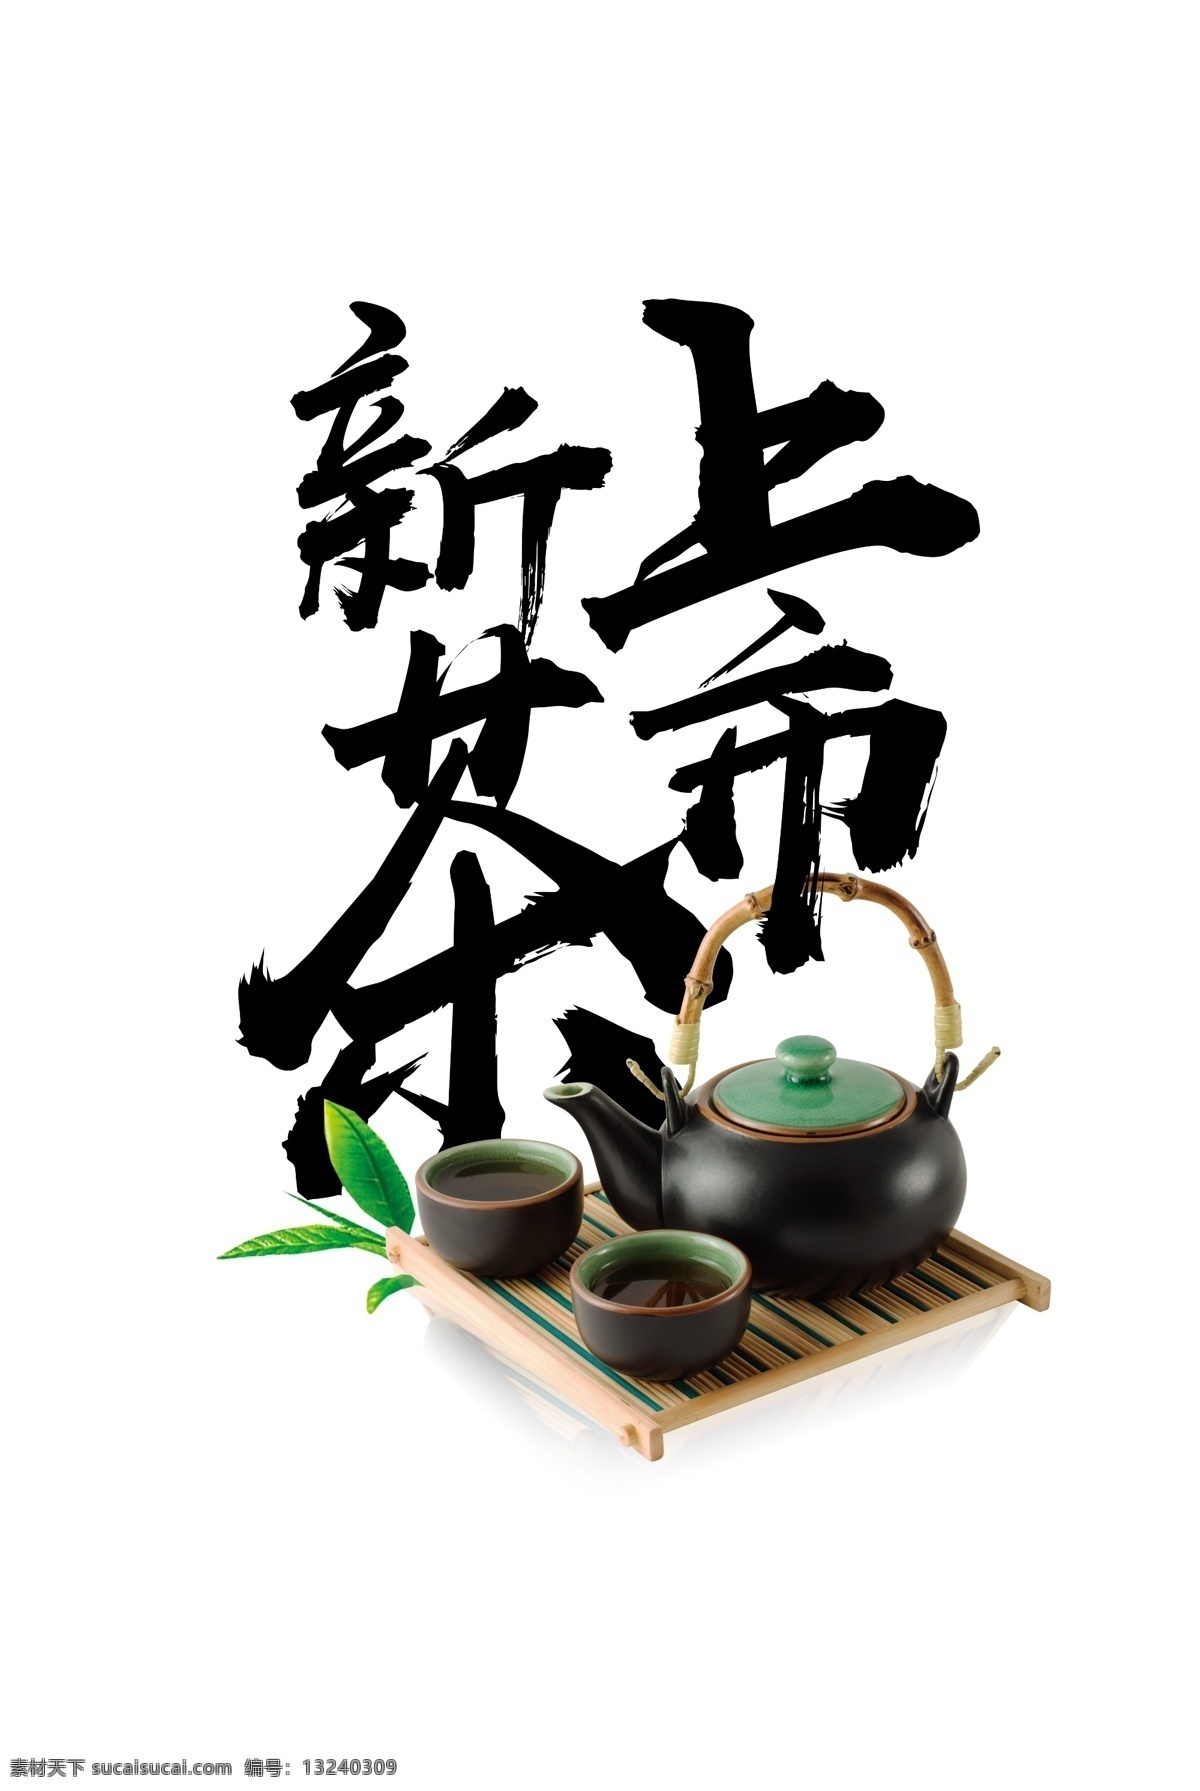 新茶 上市 装饰 元素 茶壶 字体设计 艺术字体 茶杯 茶叶 新茶上市 品茶 春茶上市 泡茶 春茶 中国茶 黑色字体 字体元素